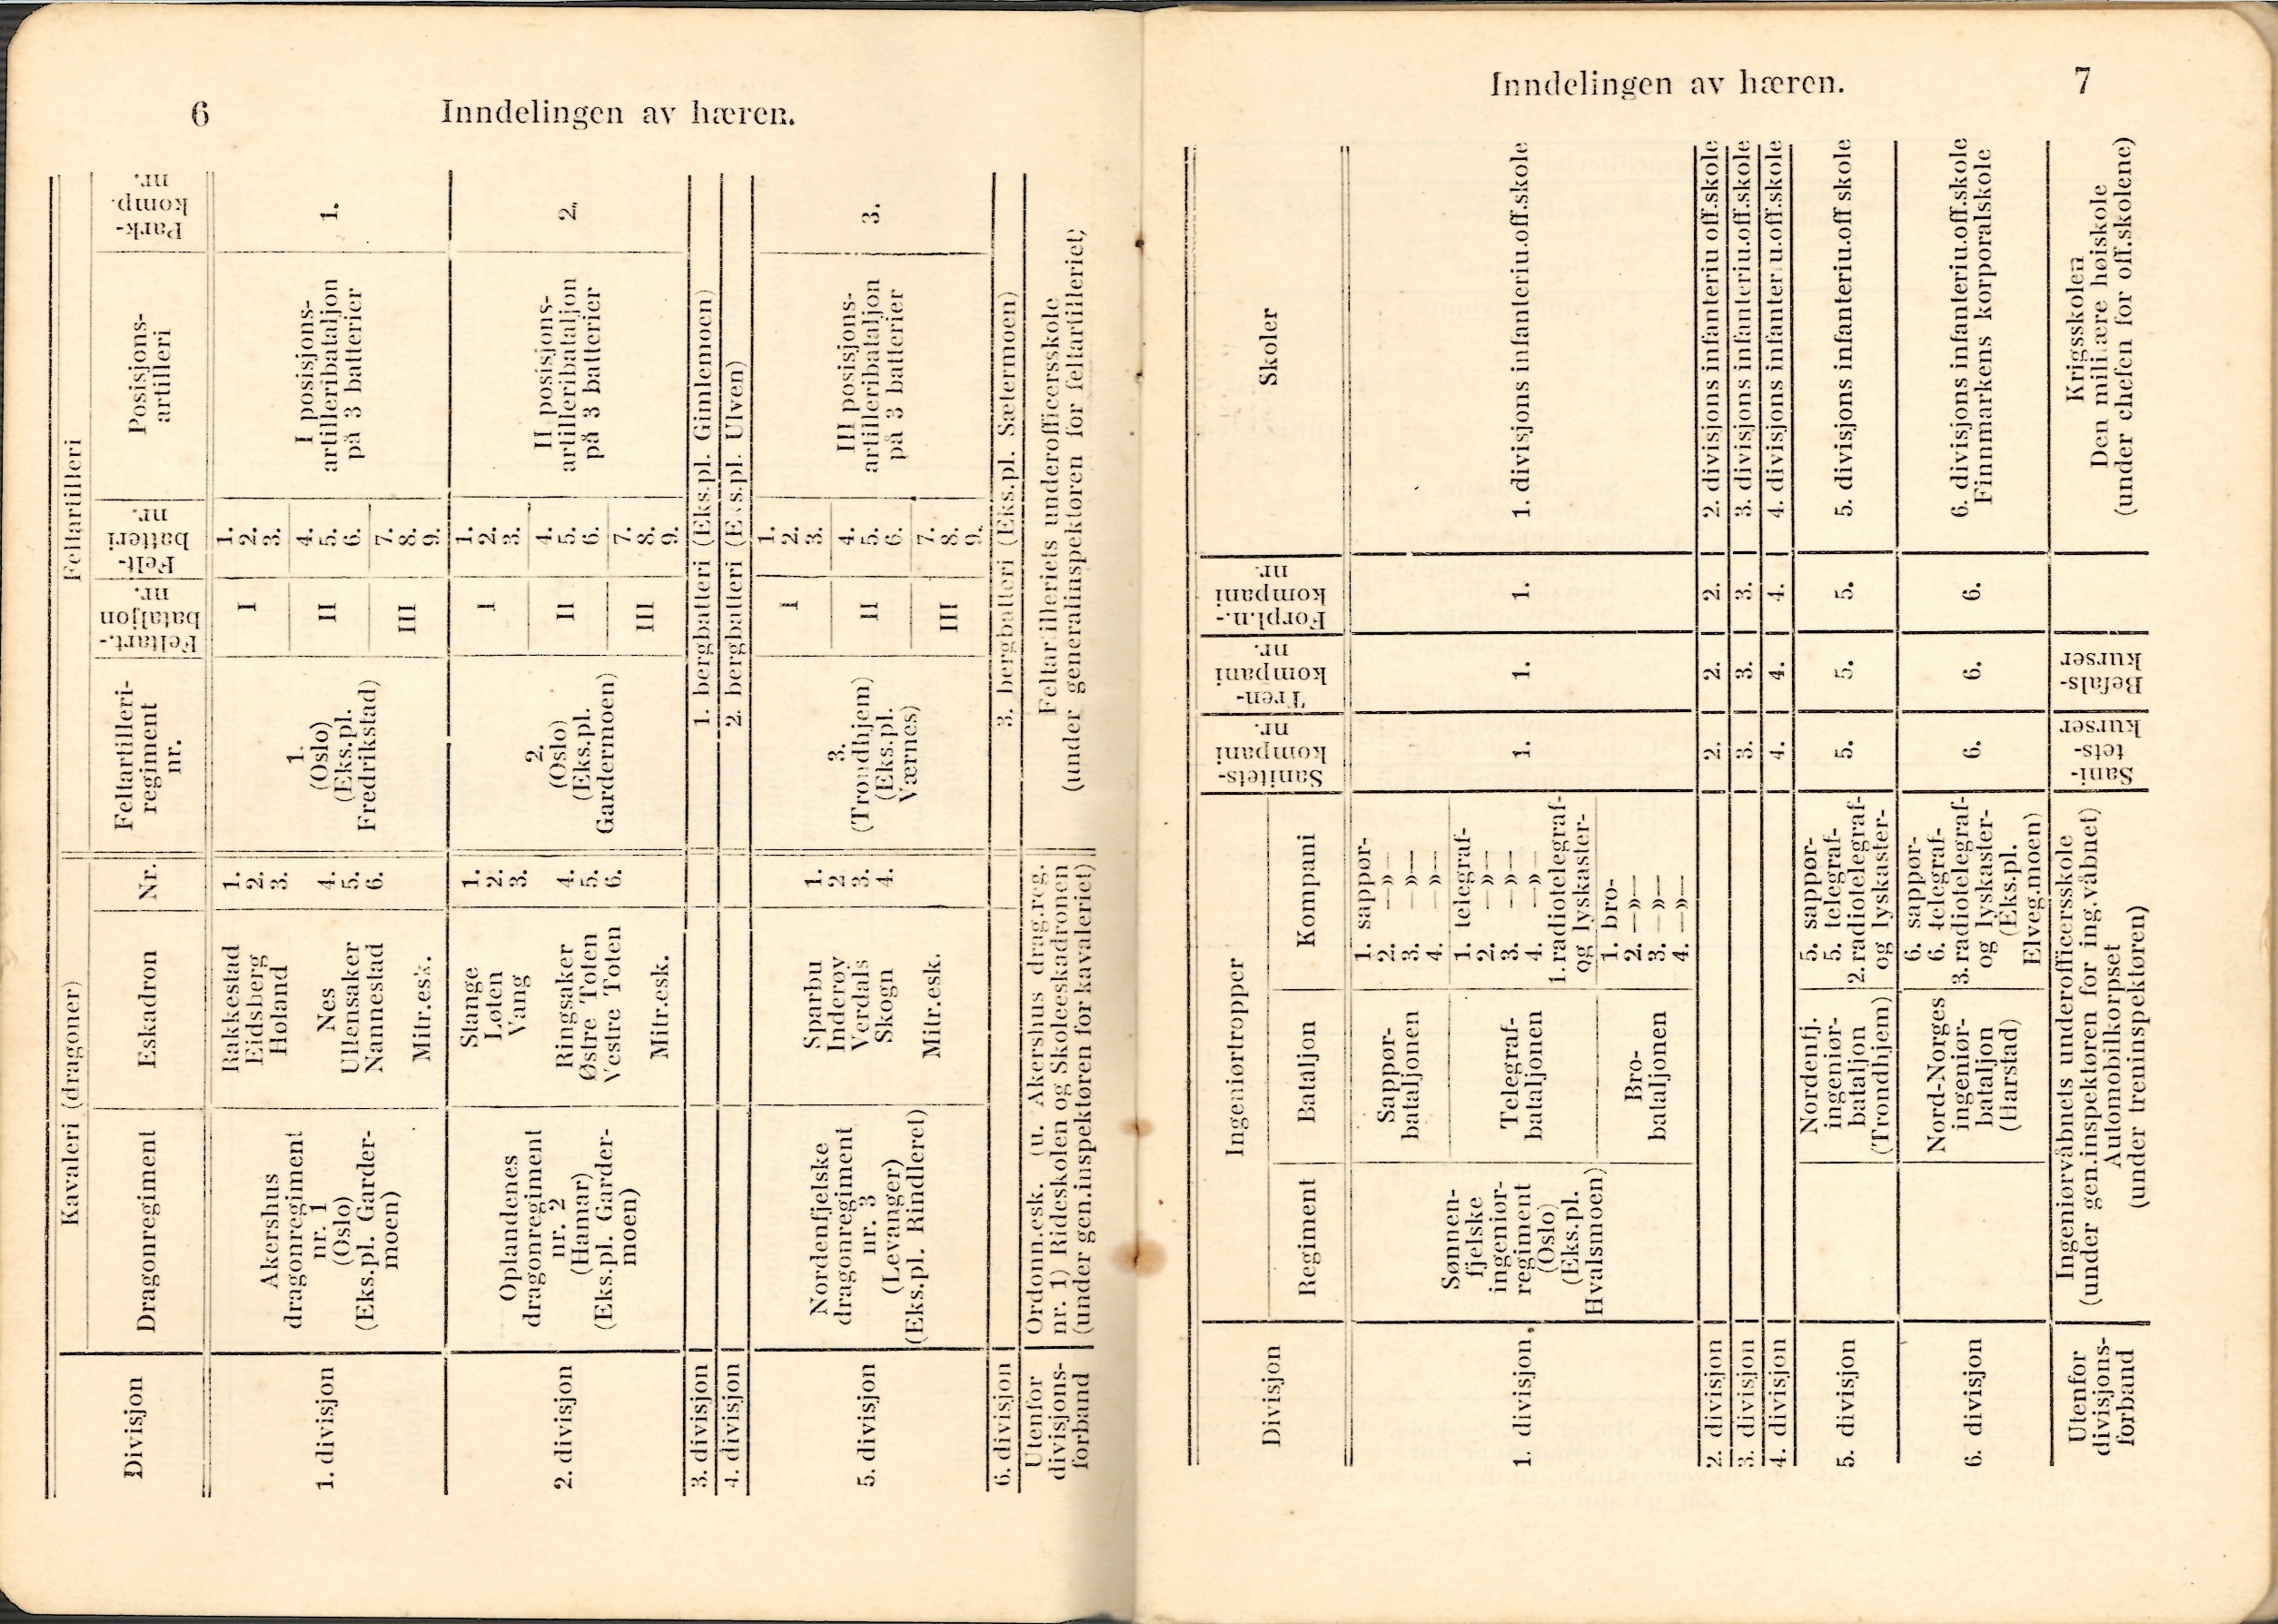 ./doc/reglement/Haandbok1925/Haandbok-for-infanteristen-1925-5.jpg